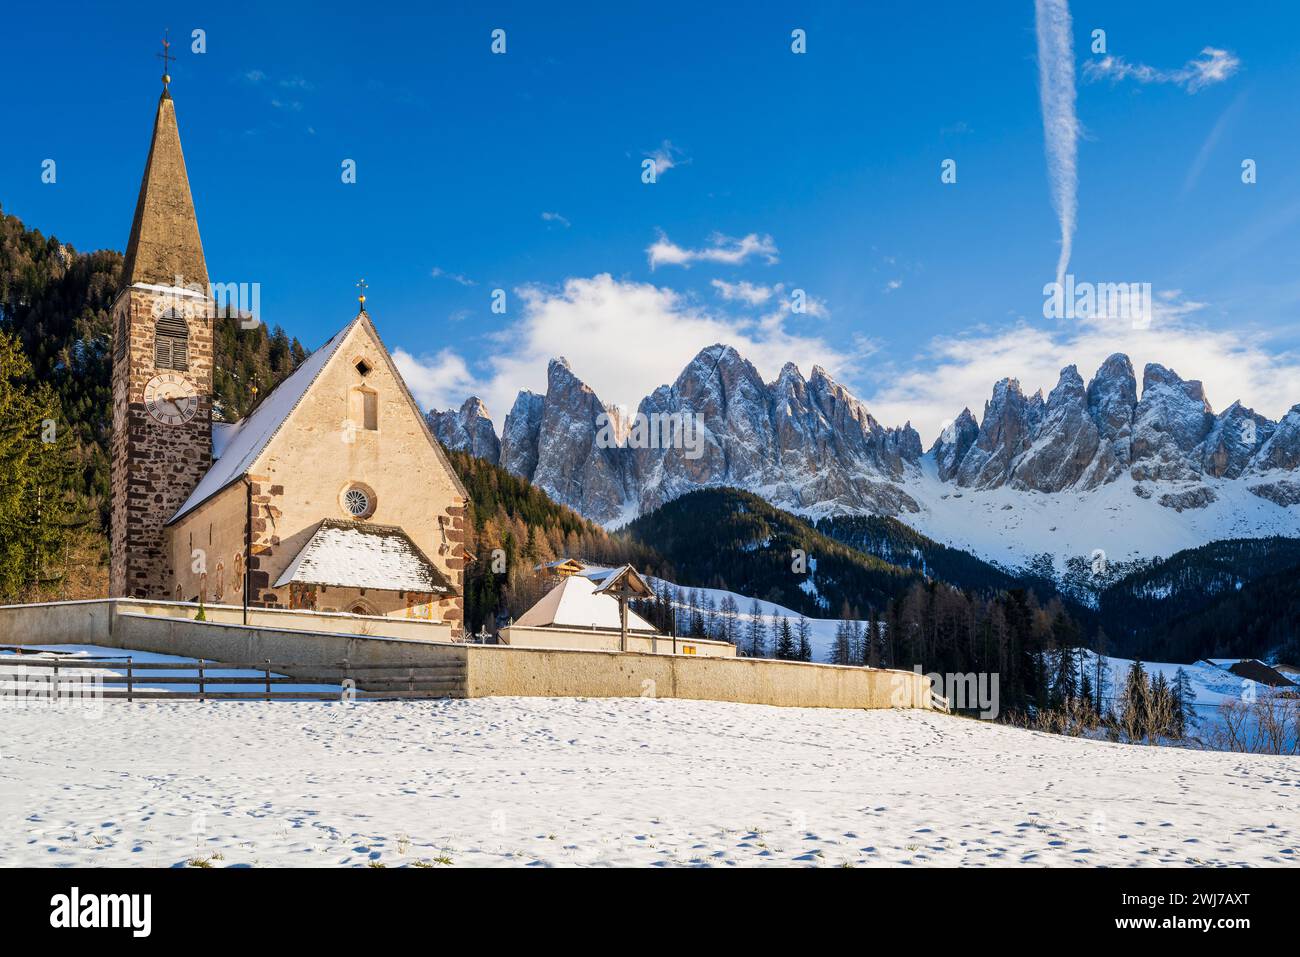 Chiesa di S.. Magdalena con Odle (Geislergruppe) sullo sfondo, Dolomiti, Villnoss-Funes, alto Adige, Italia Foto Stock